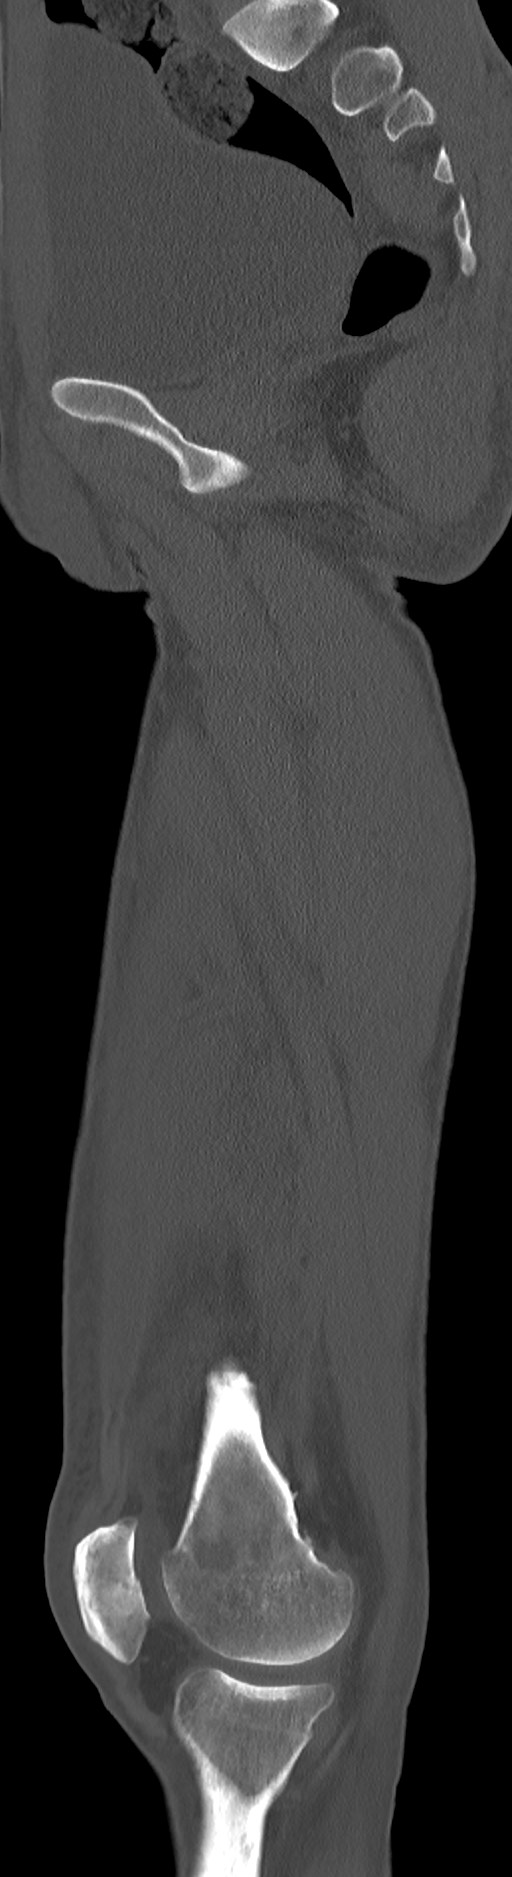 Chronic osteomyelitis (with sequestrum) (Radiopaedia 74813-85822 C 64).jpg